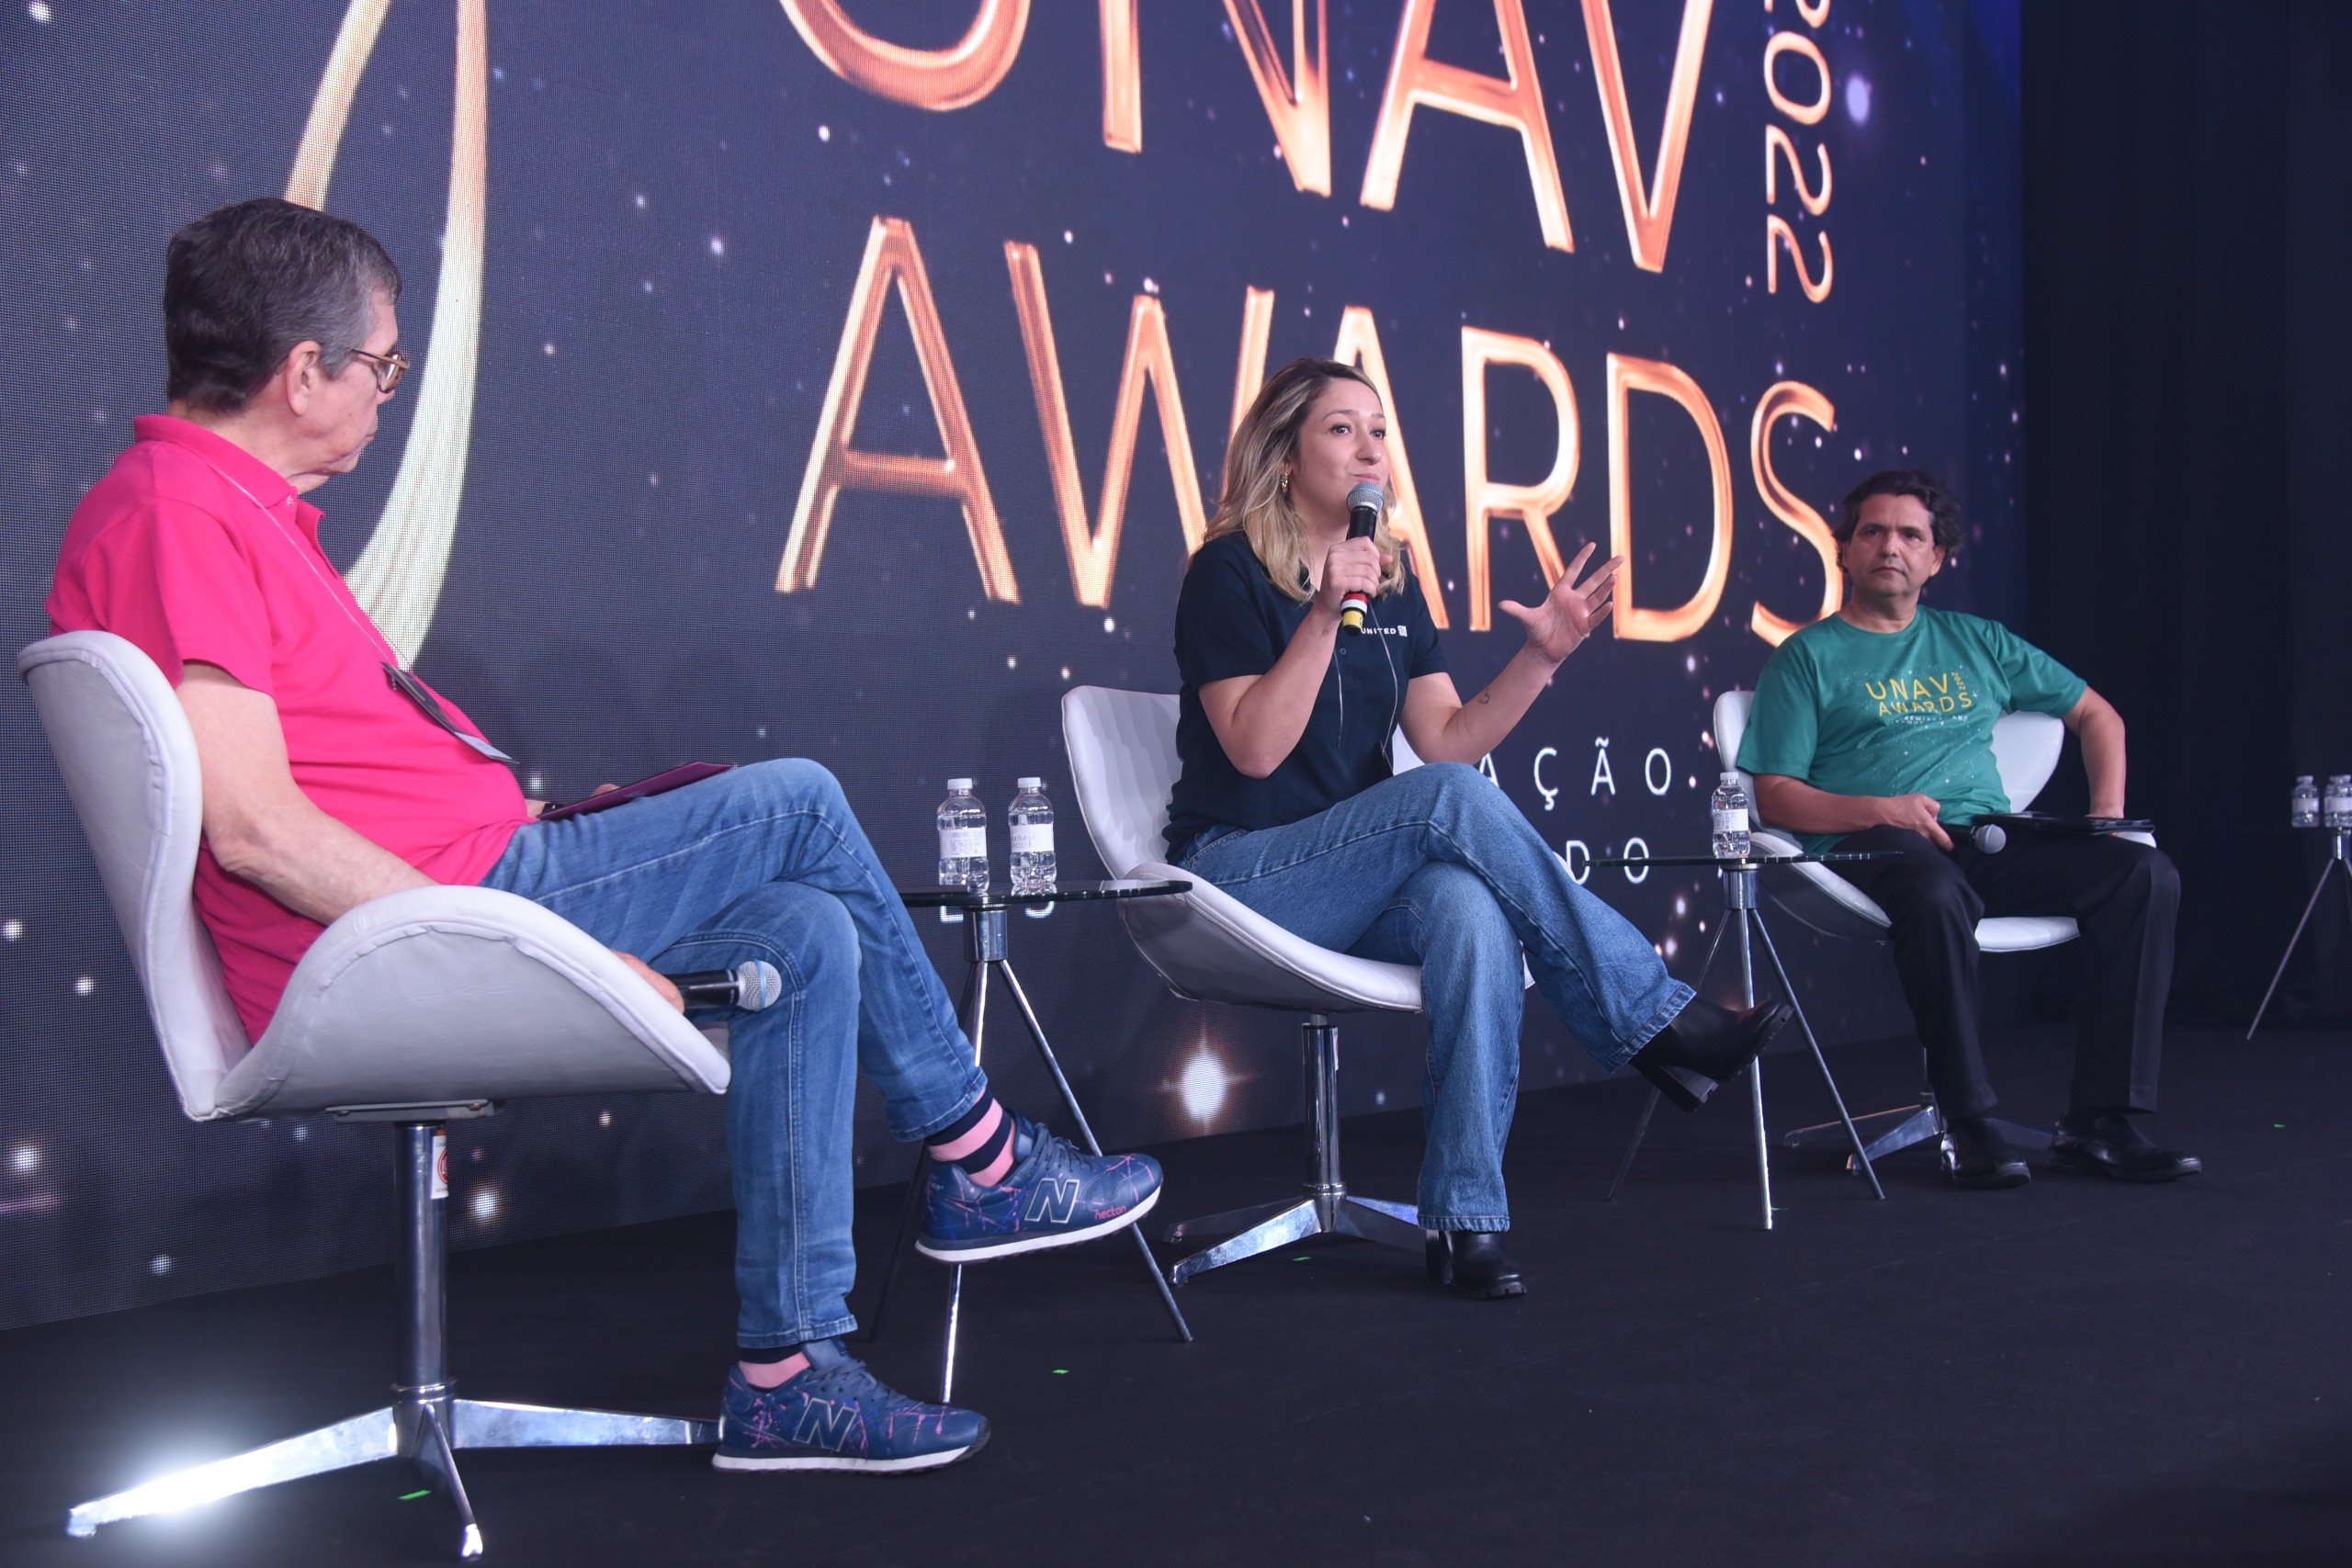 Cassio Oliveira (Sakura), Jacqueline Conrado (United) e Adriano Pereira (Unav) participam de painel no Unav Awards